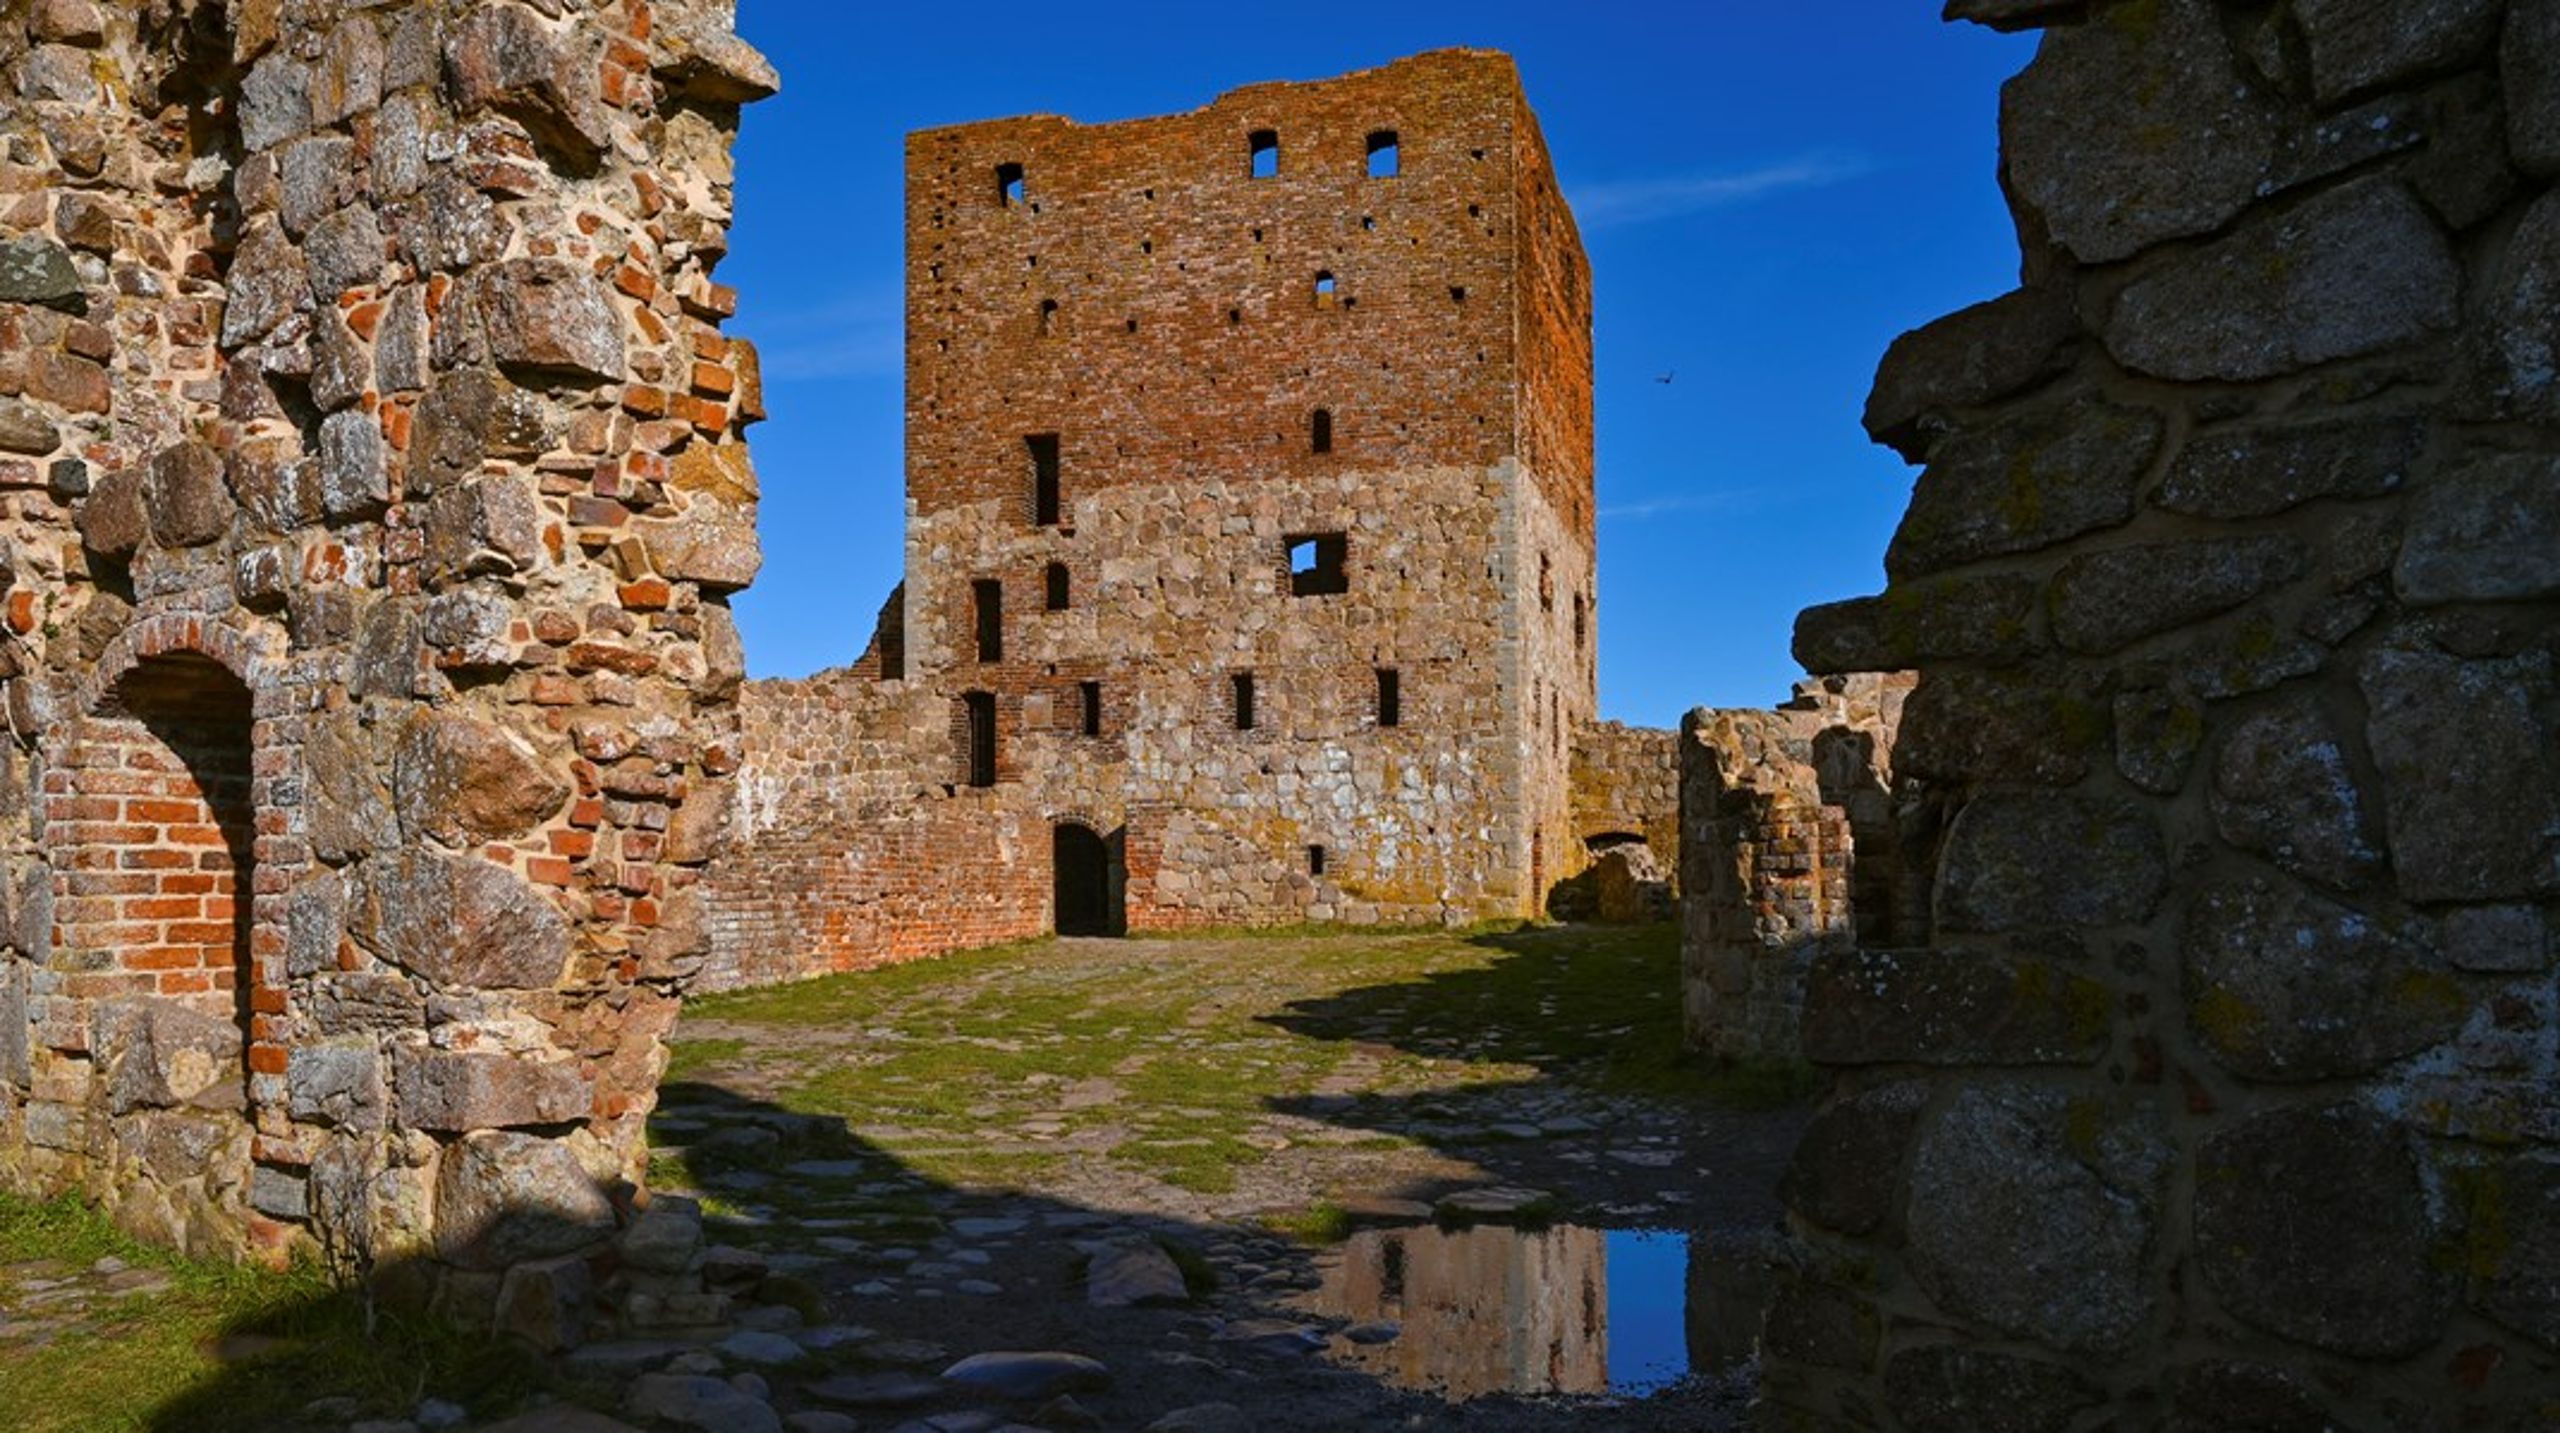 61 ud af 91 danske ruiner er i så dårlig stand, at kulturarv risikerer at gå tabt. Hammershus på billedet er blandt de fem danske fortidsminder, som tilsammen får bevilget 15 millioner kroner til istandsættelser i finansloven for 2024.&nbsp;